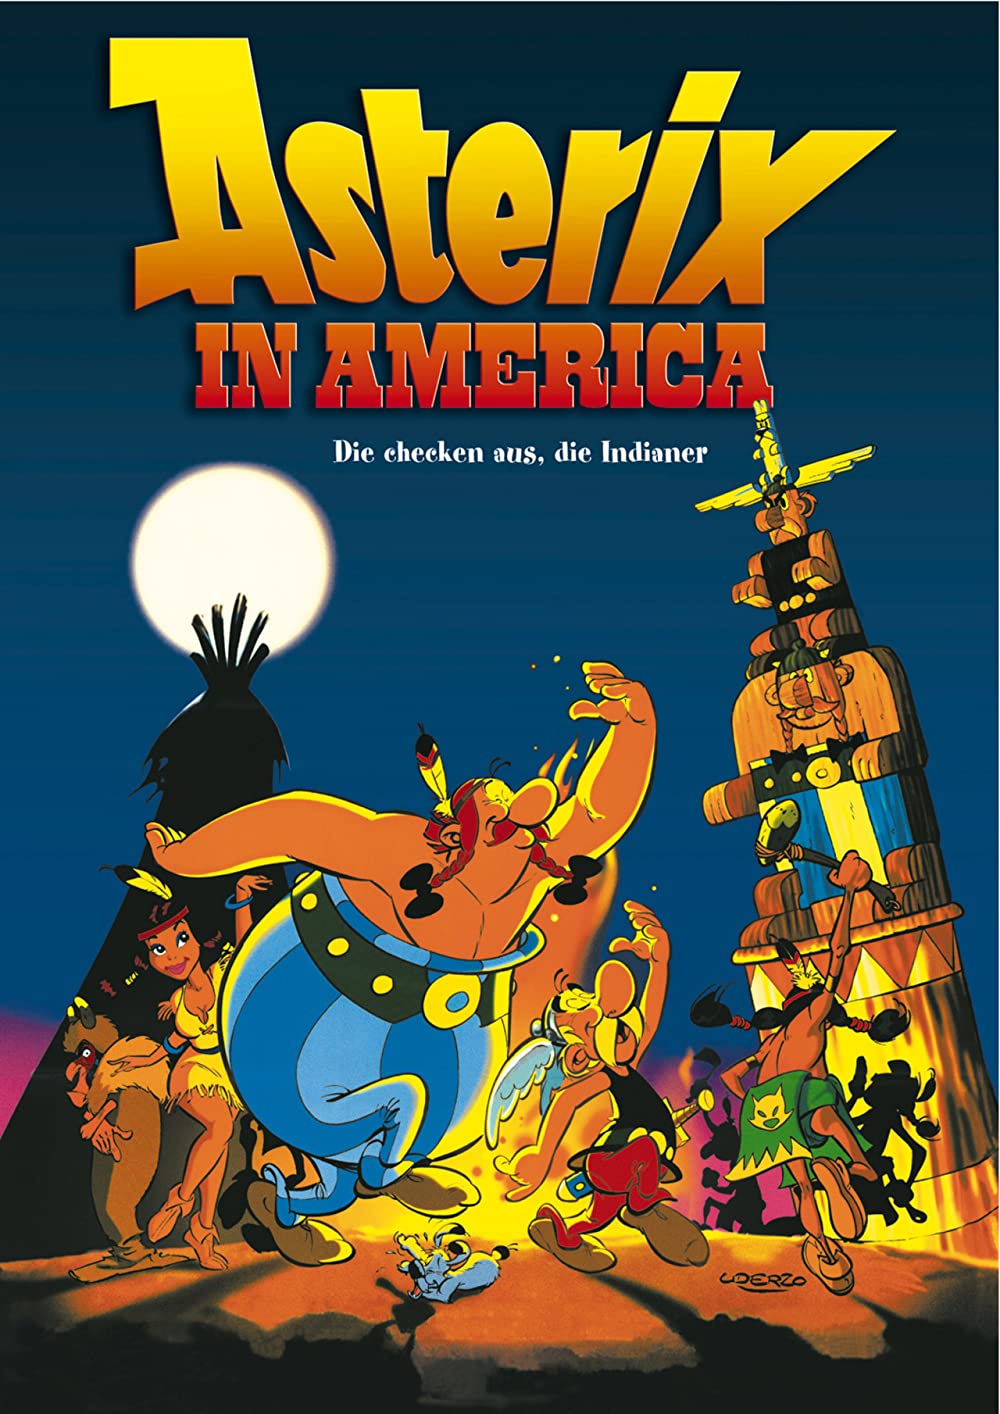 Filmbeschreibung zu Asterix in America